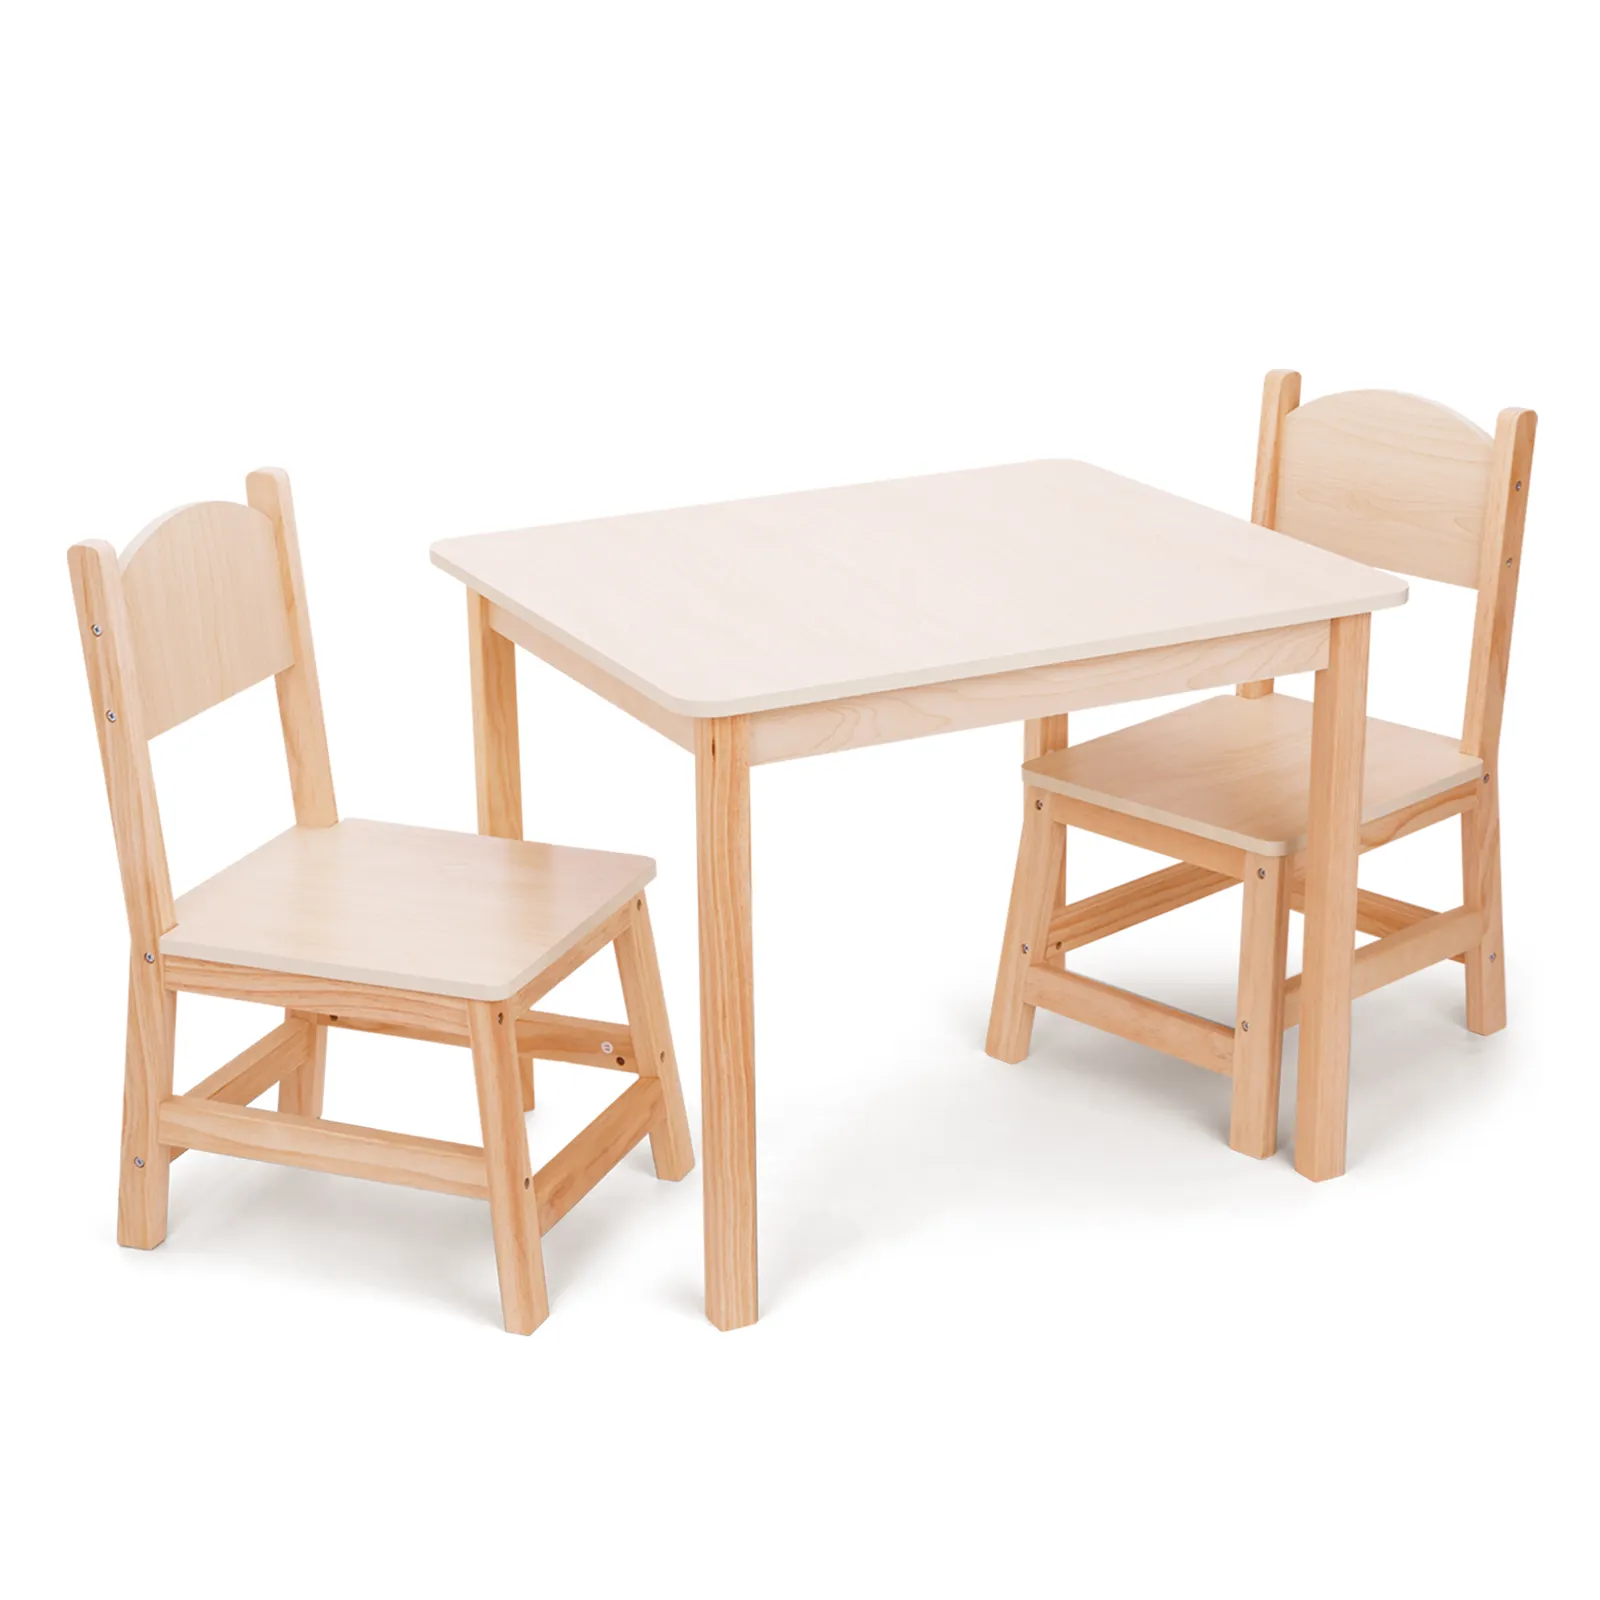 Holz-Kindermöbel-Set Kinder Holzstuhl und -Tisch für Tagespflege-Zentrum Kindergarten Klassenzimmer